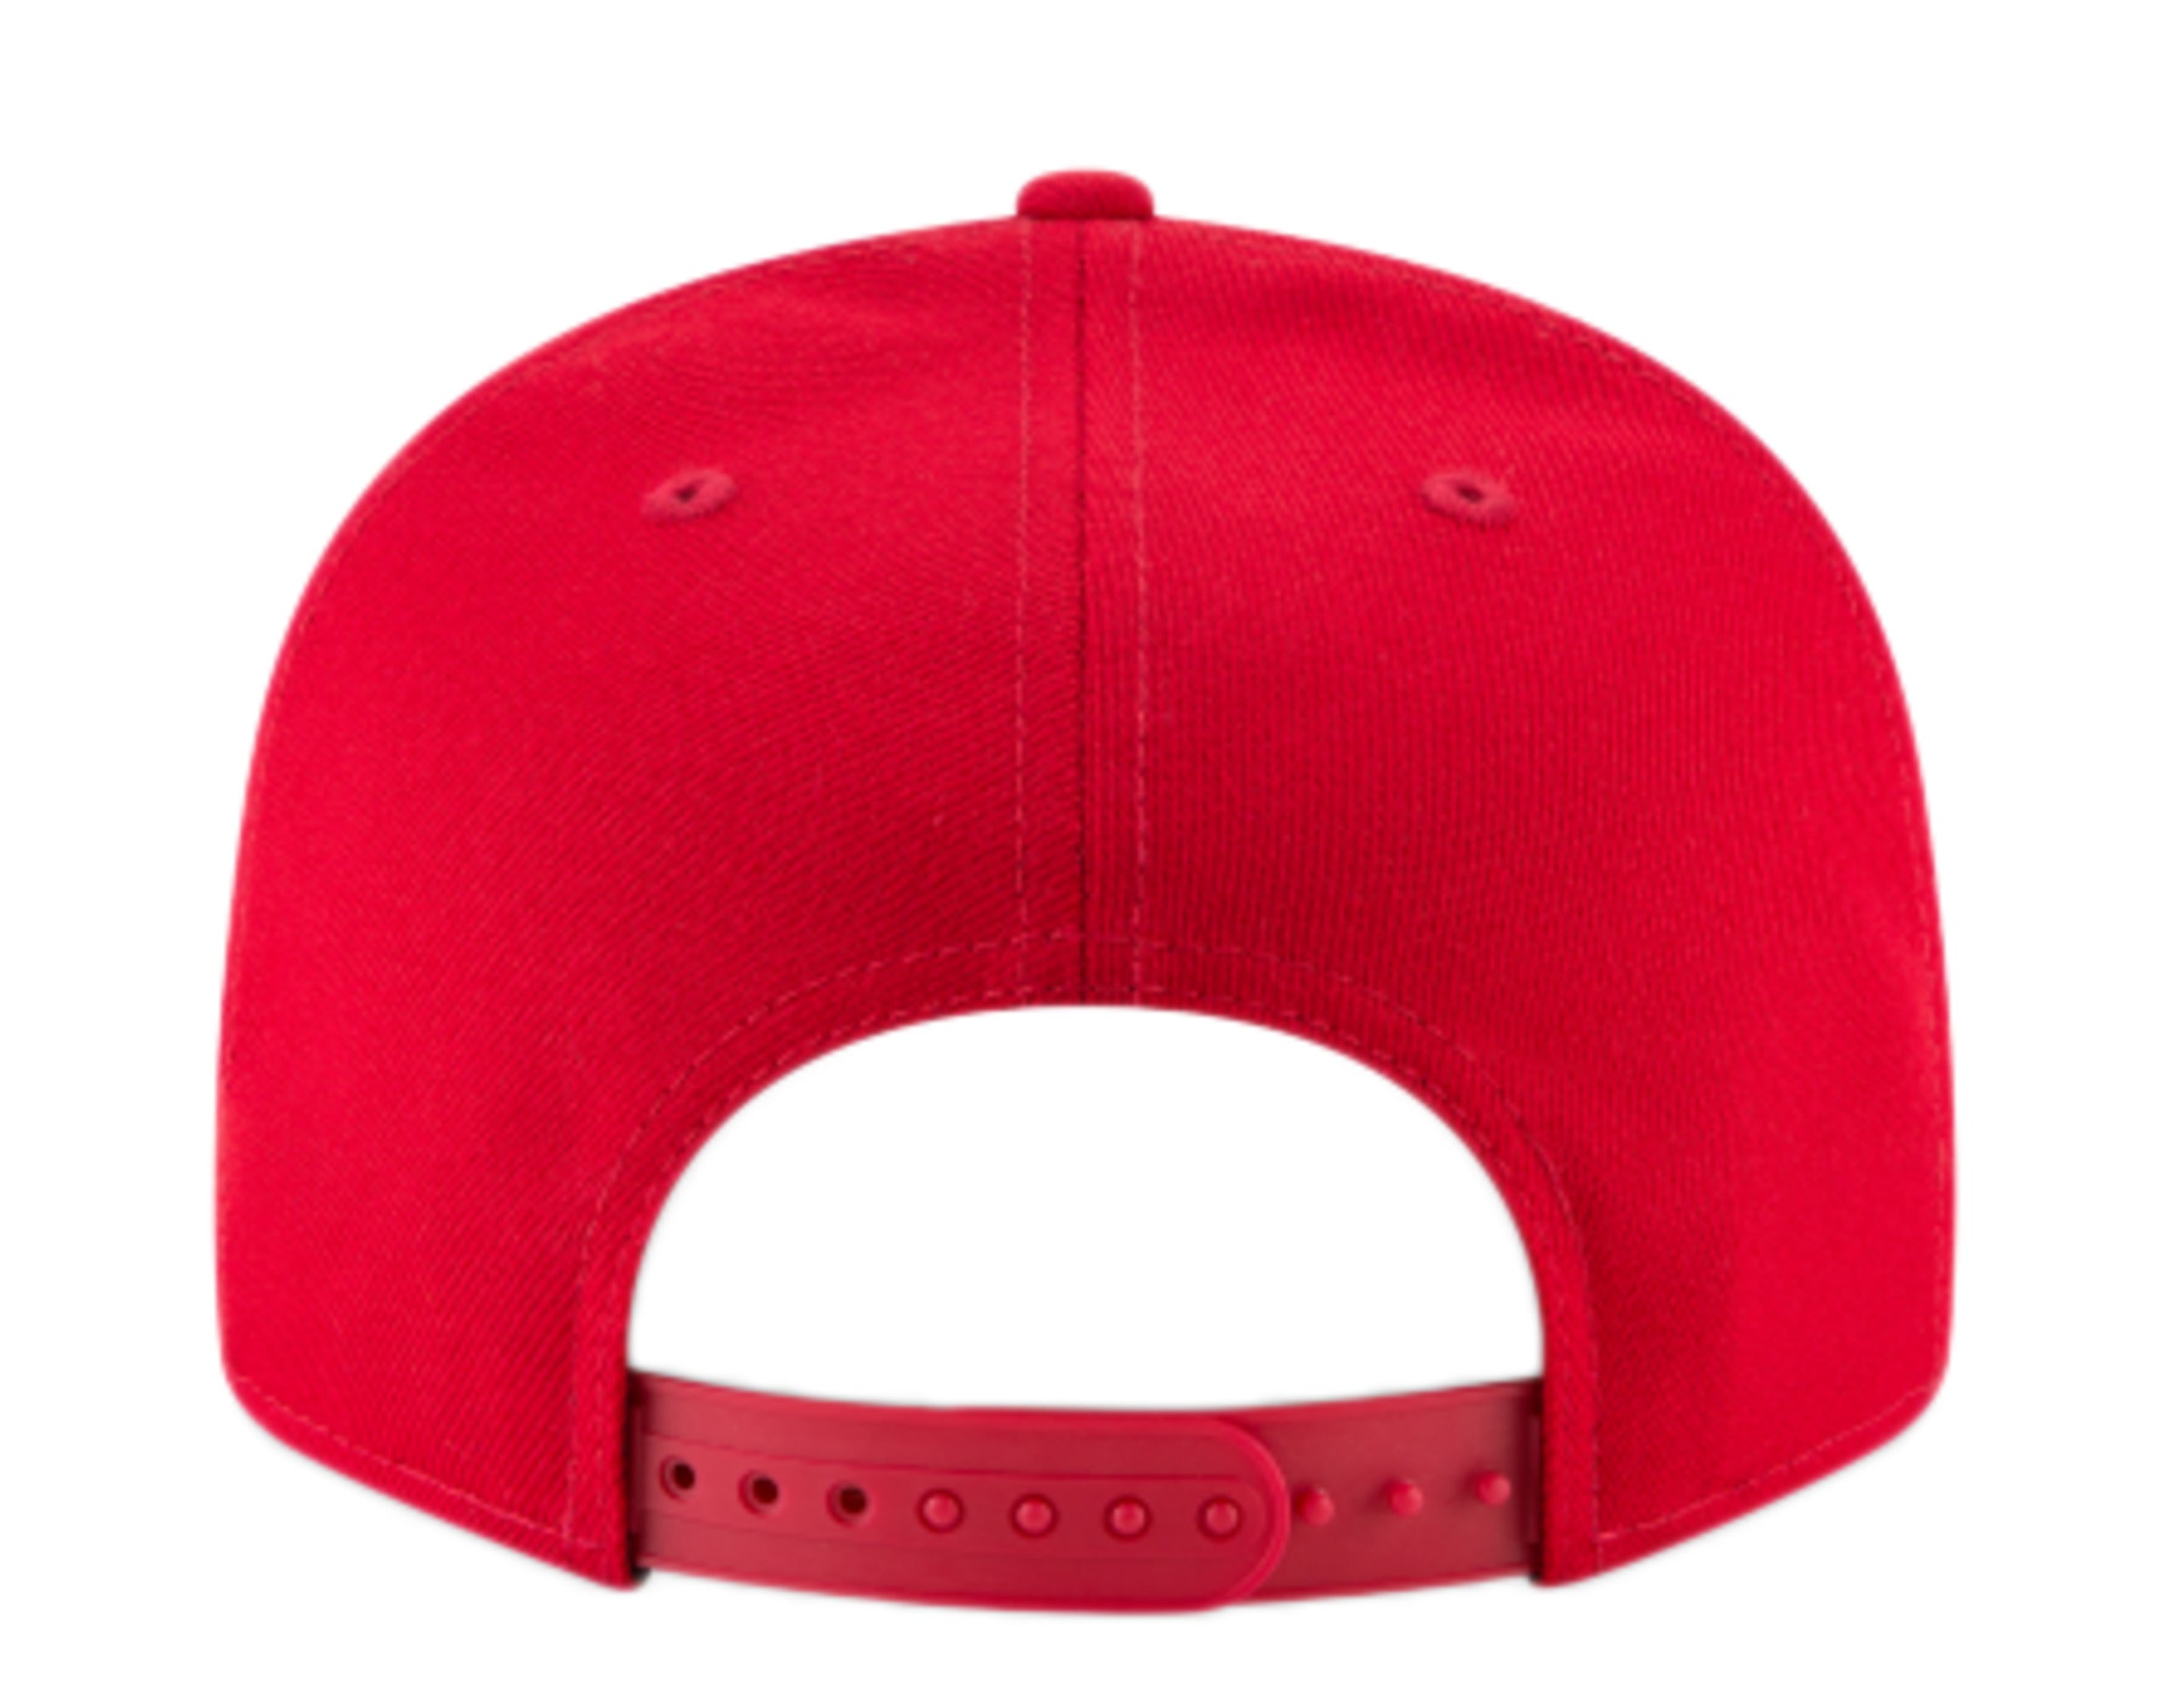 Vintage Cincinnati Reds Plain Logo Snapback Hat Adjustable MLB 